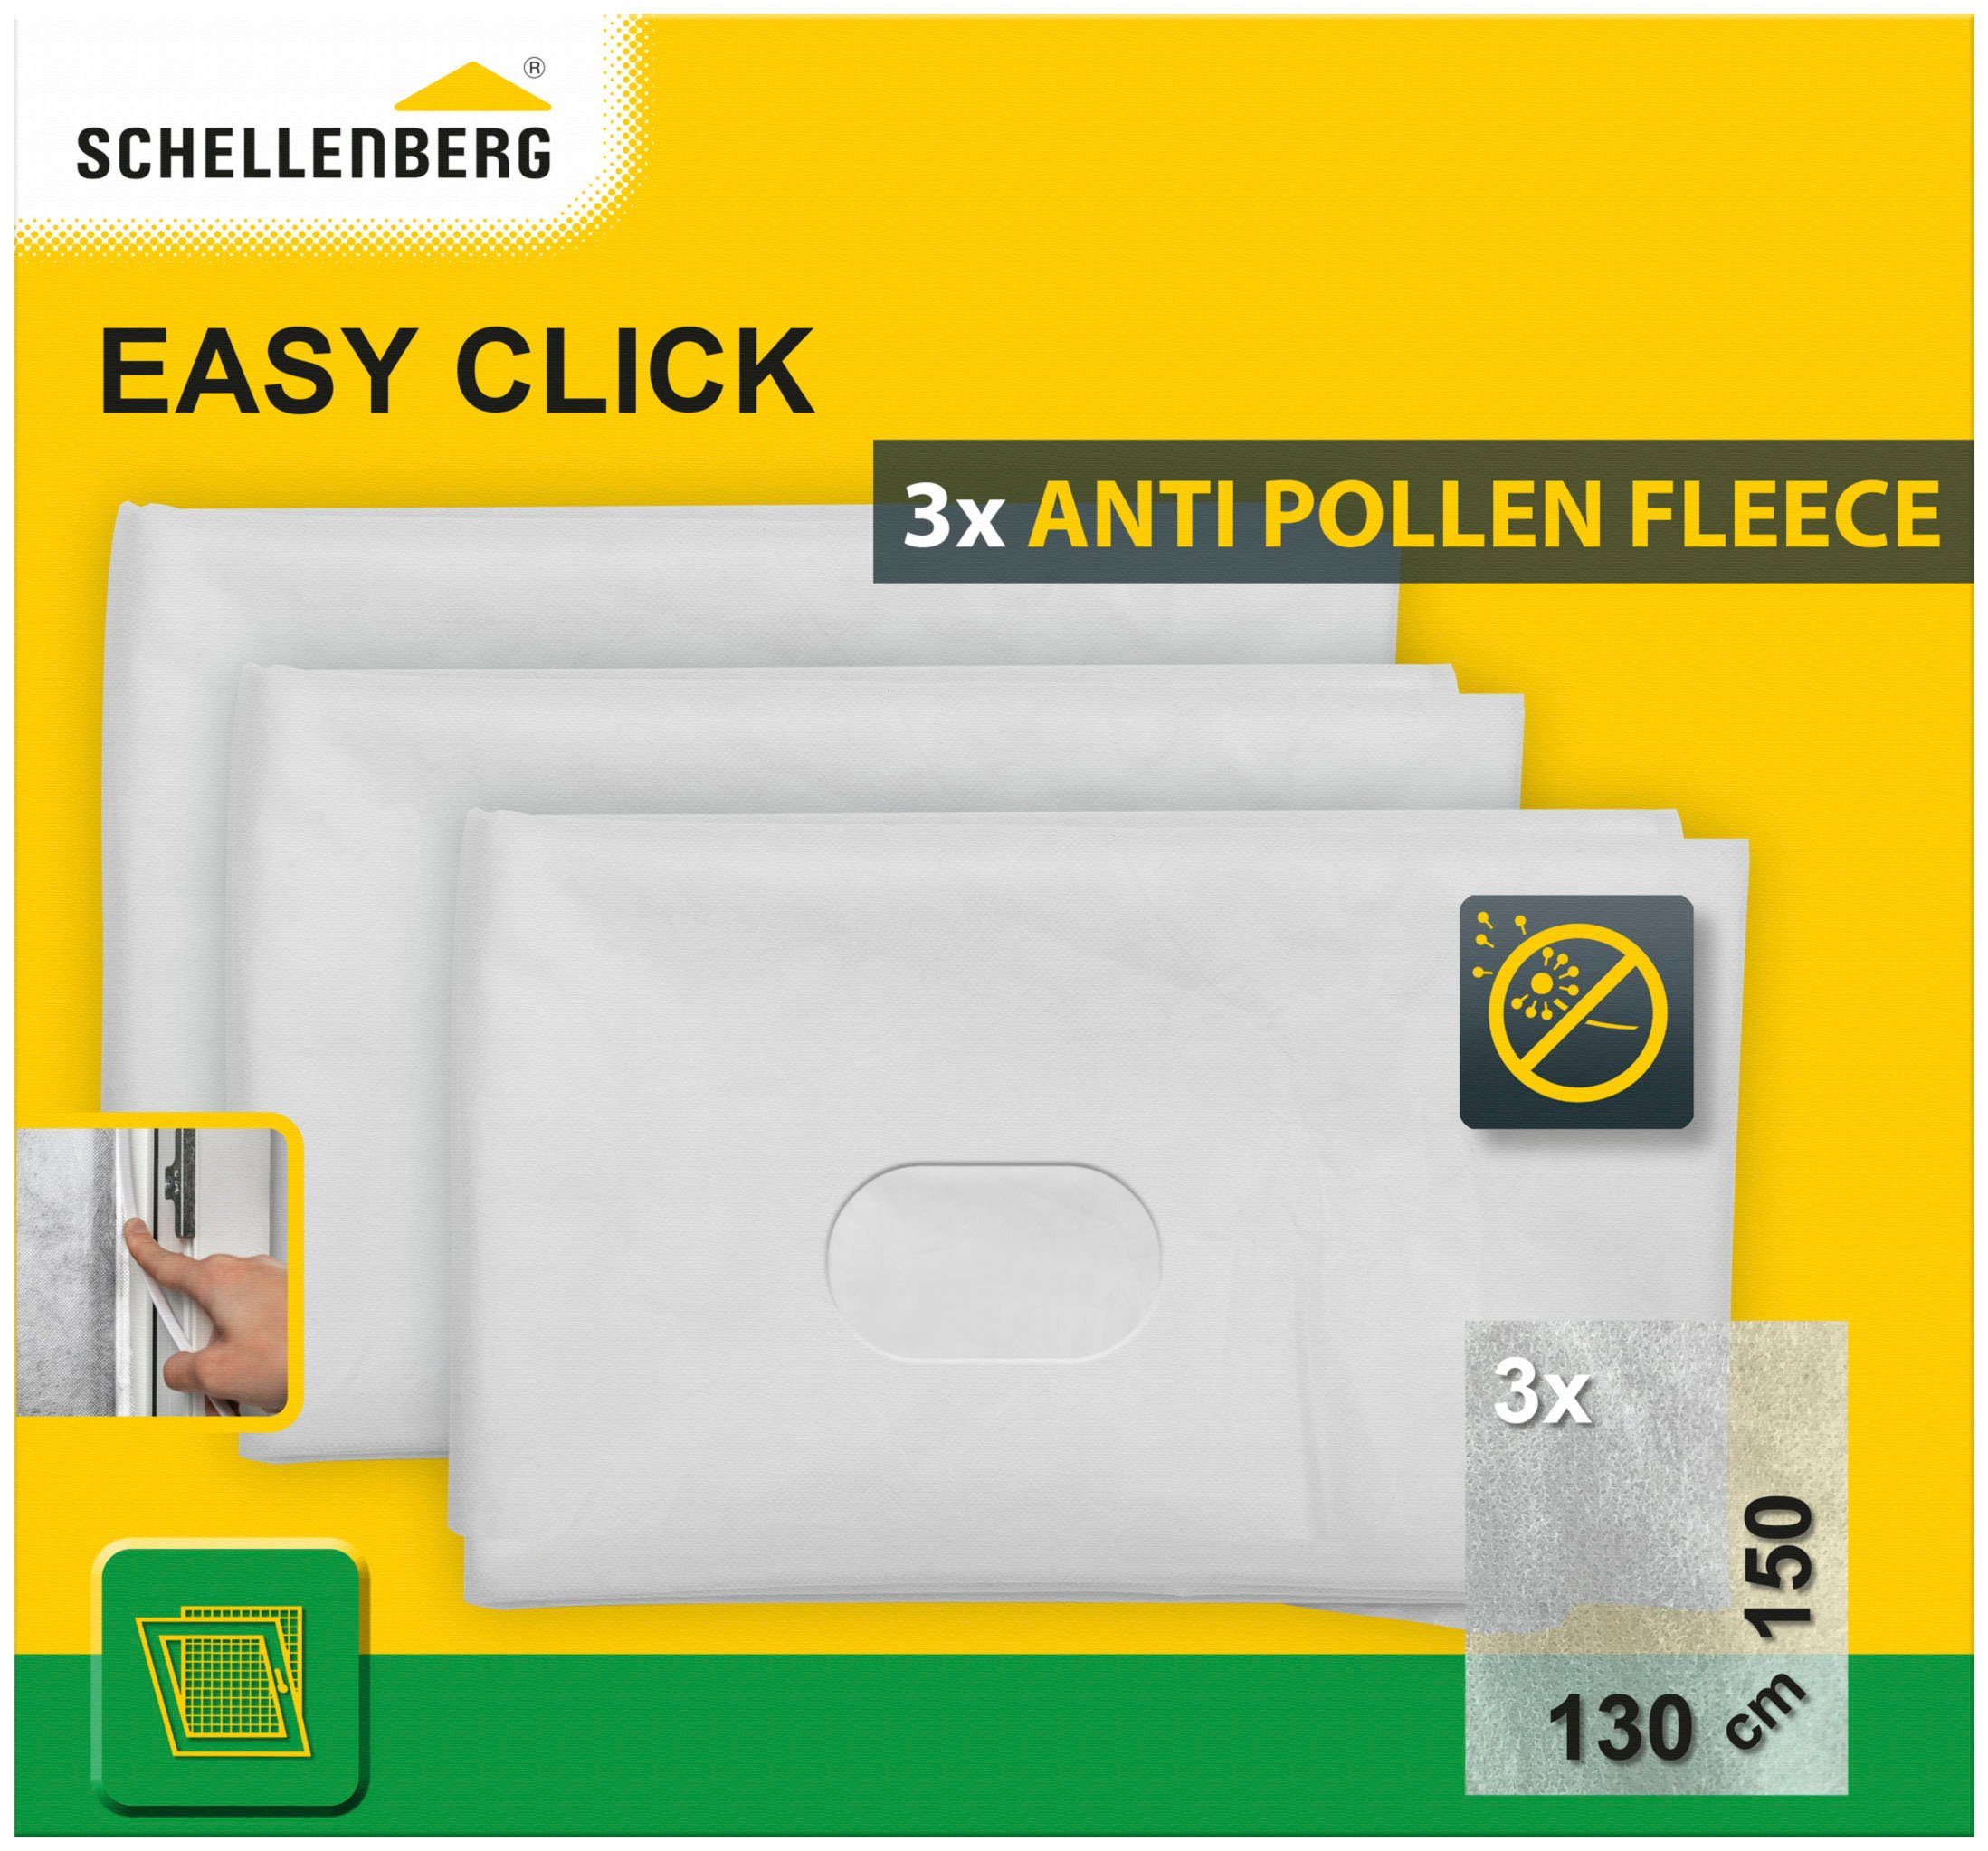 SCHELLENBERG Fliegengitter-Gewebe Pollenschutz für Fenster Easy Click,  Pollenschutzvlies Austauschset im 3er-Pack, 130 x 150 cm, weiß, 70473